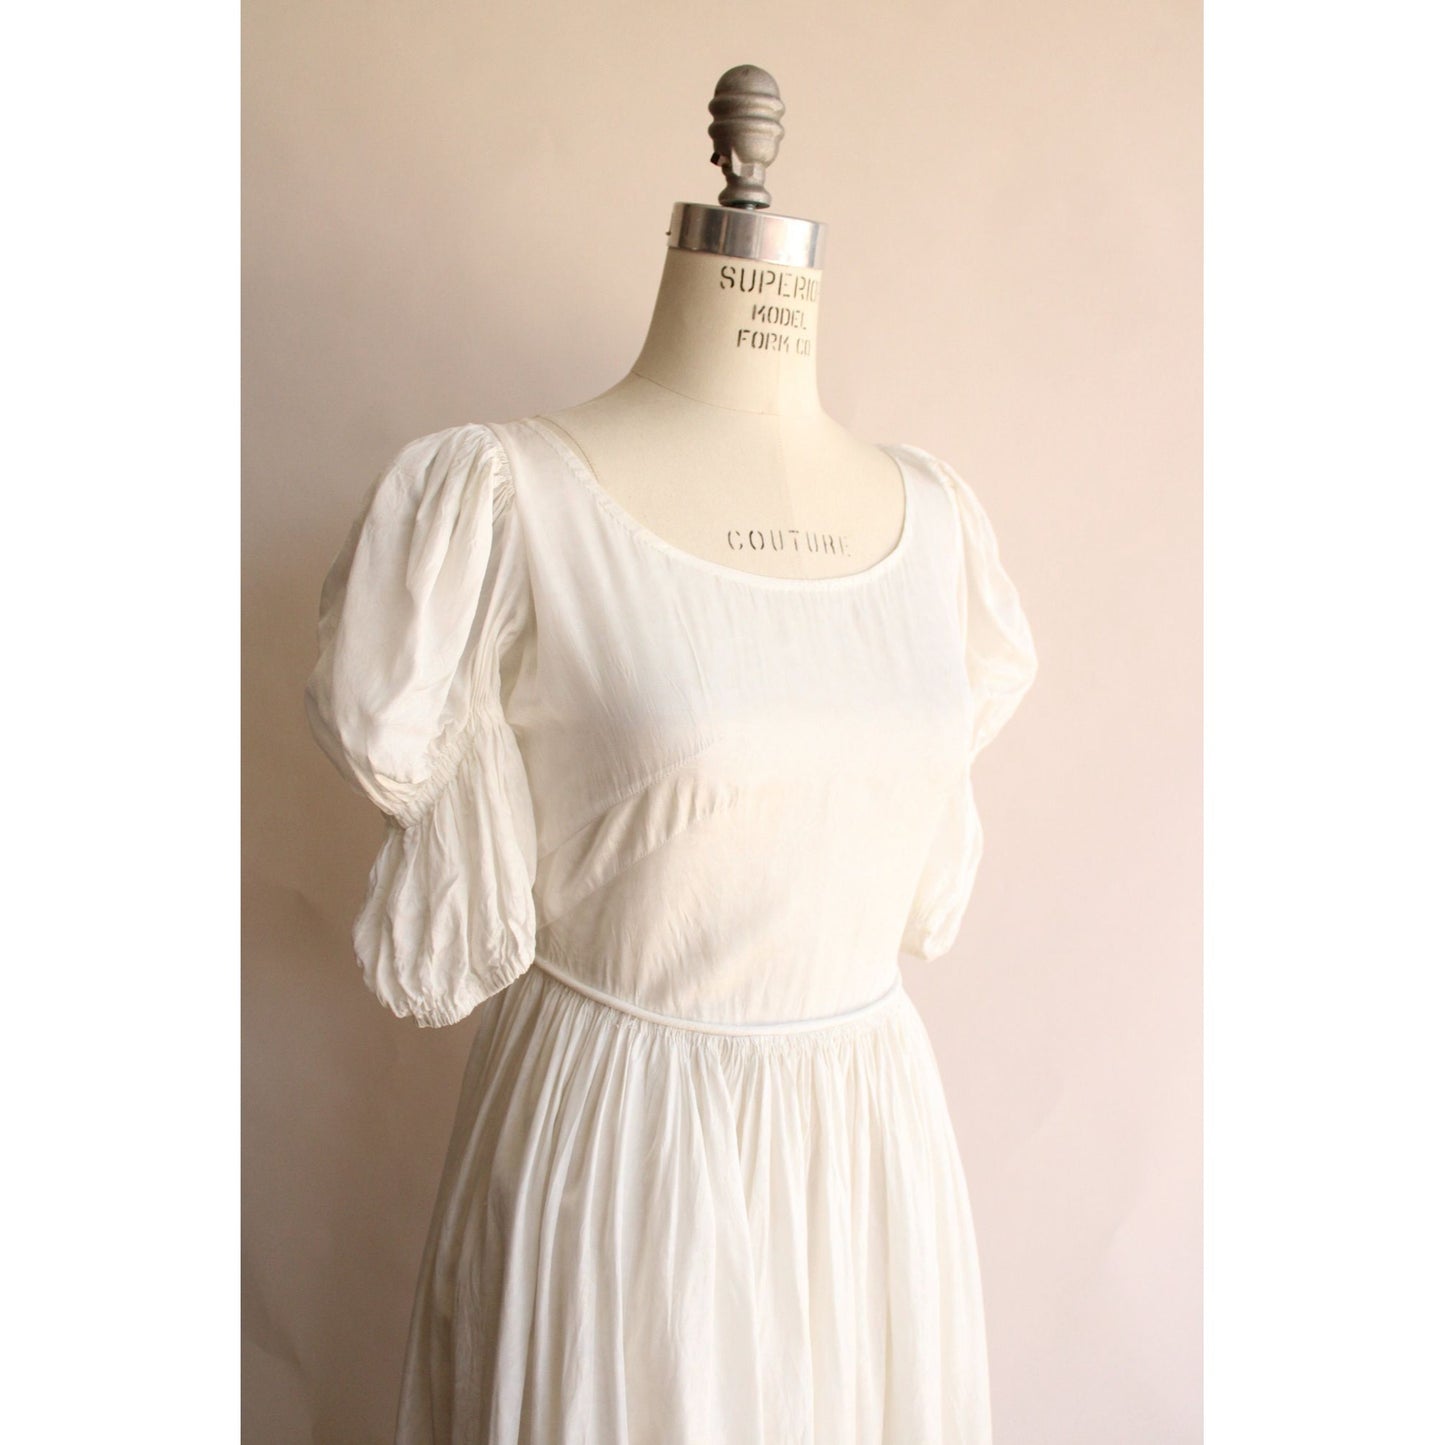 Vintage 1940s White Taffeta Full Length Gown